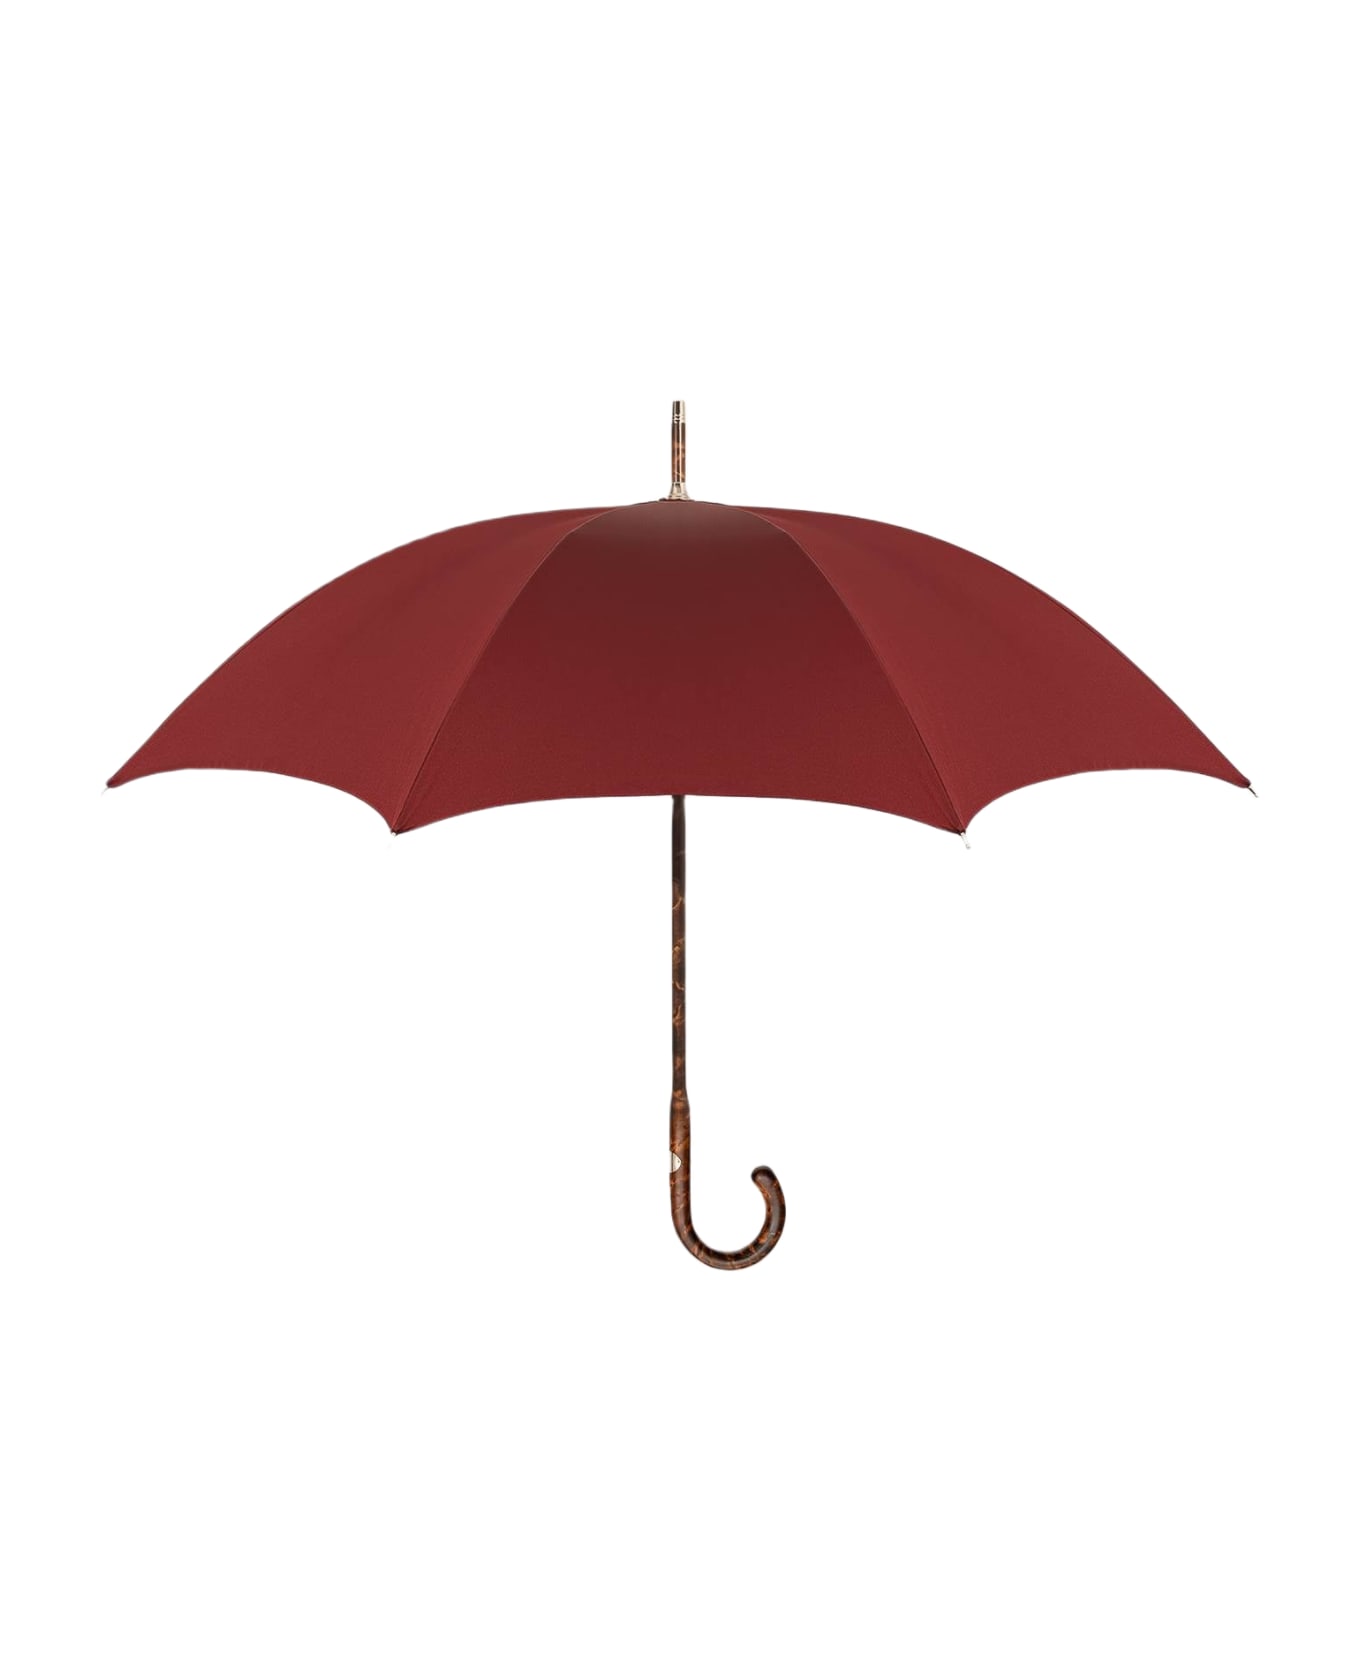 Larusmiani Umbrella Travel Umbrella - DarkRed 傘